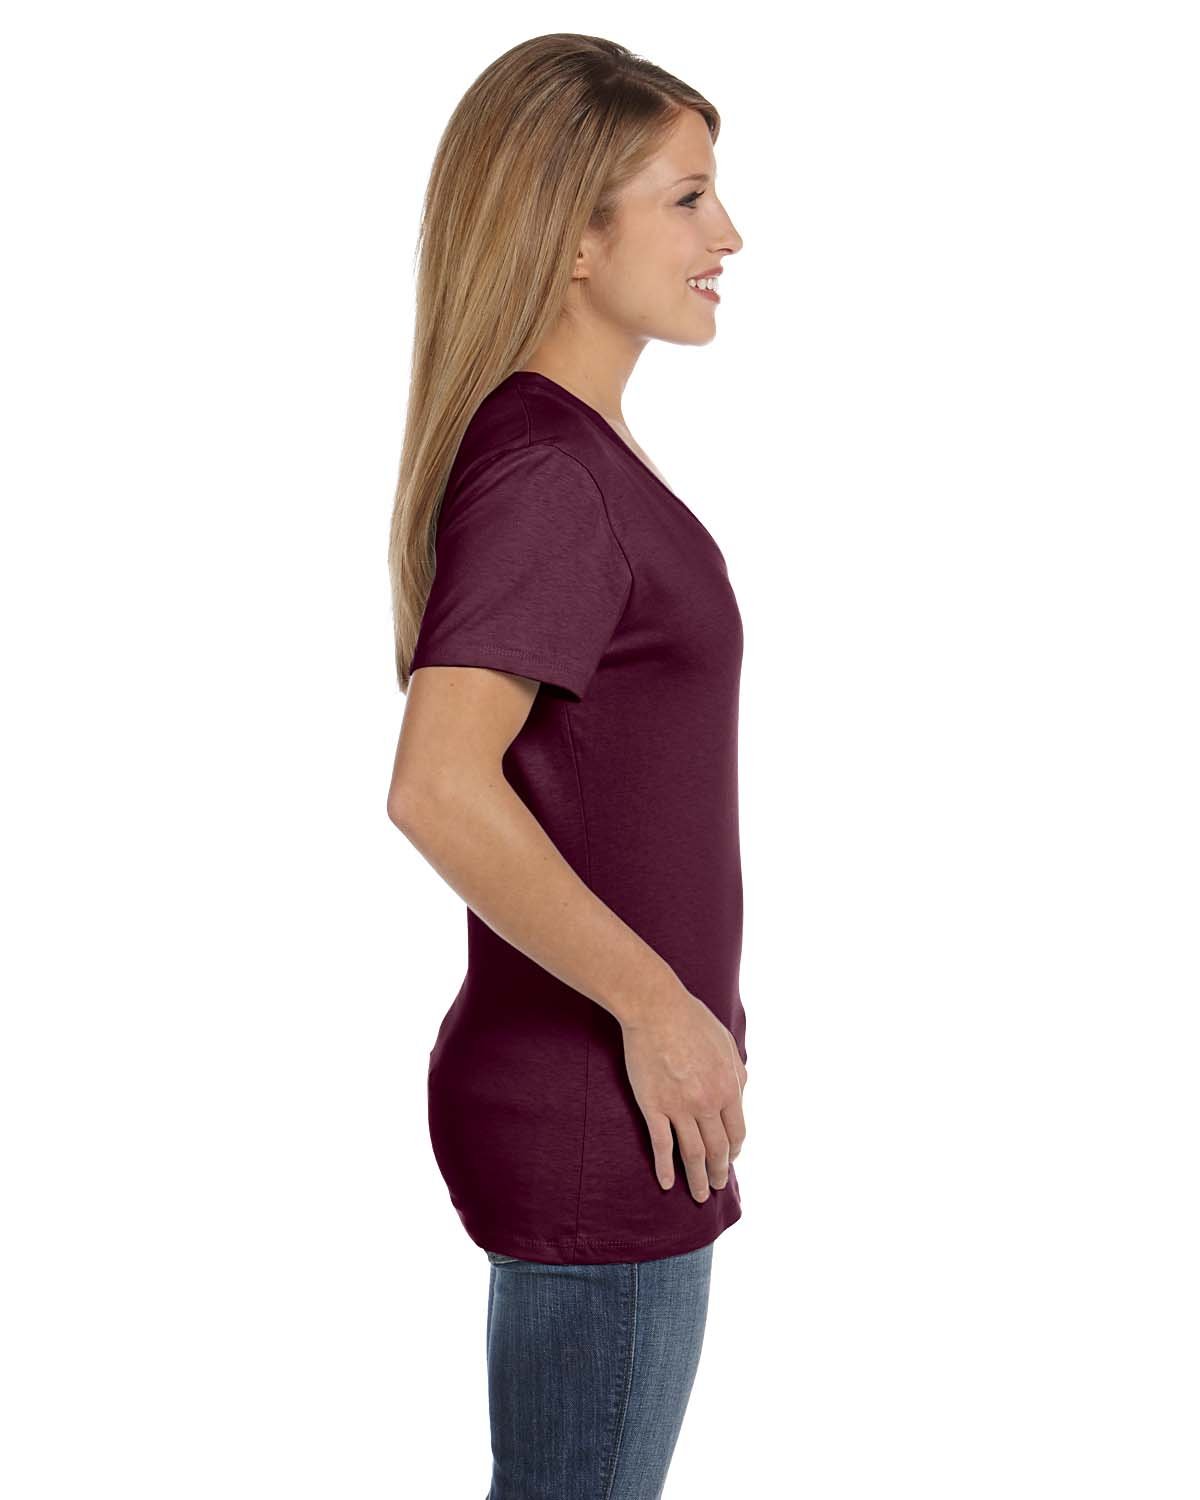 Hanes S04V Ladies' 4.5 oz., 100% Ringspun Cotton nano-T® V-Neck T-Shirt